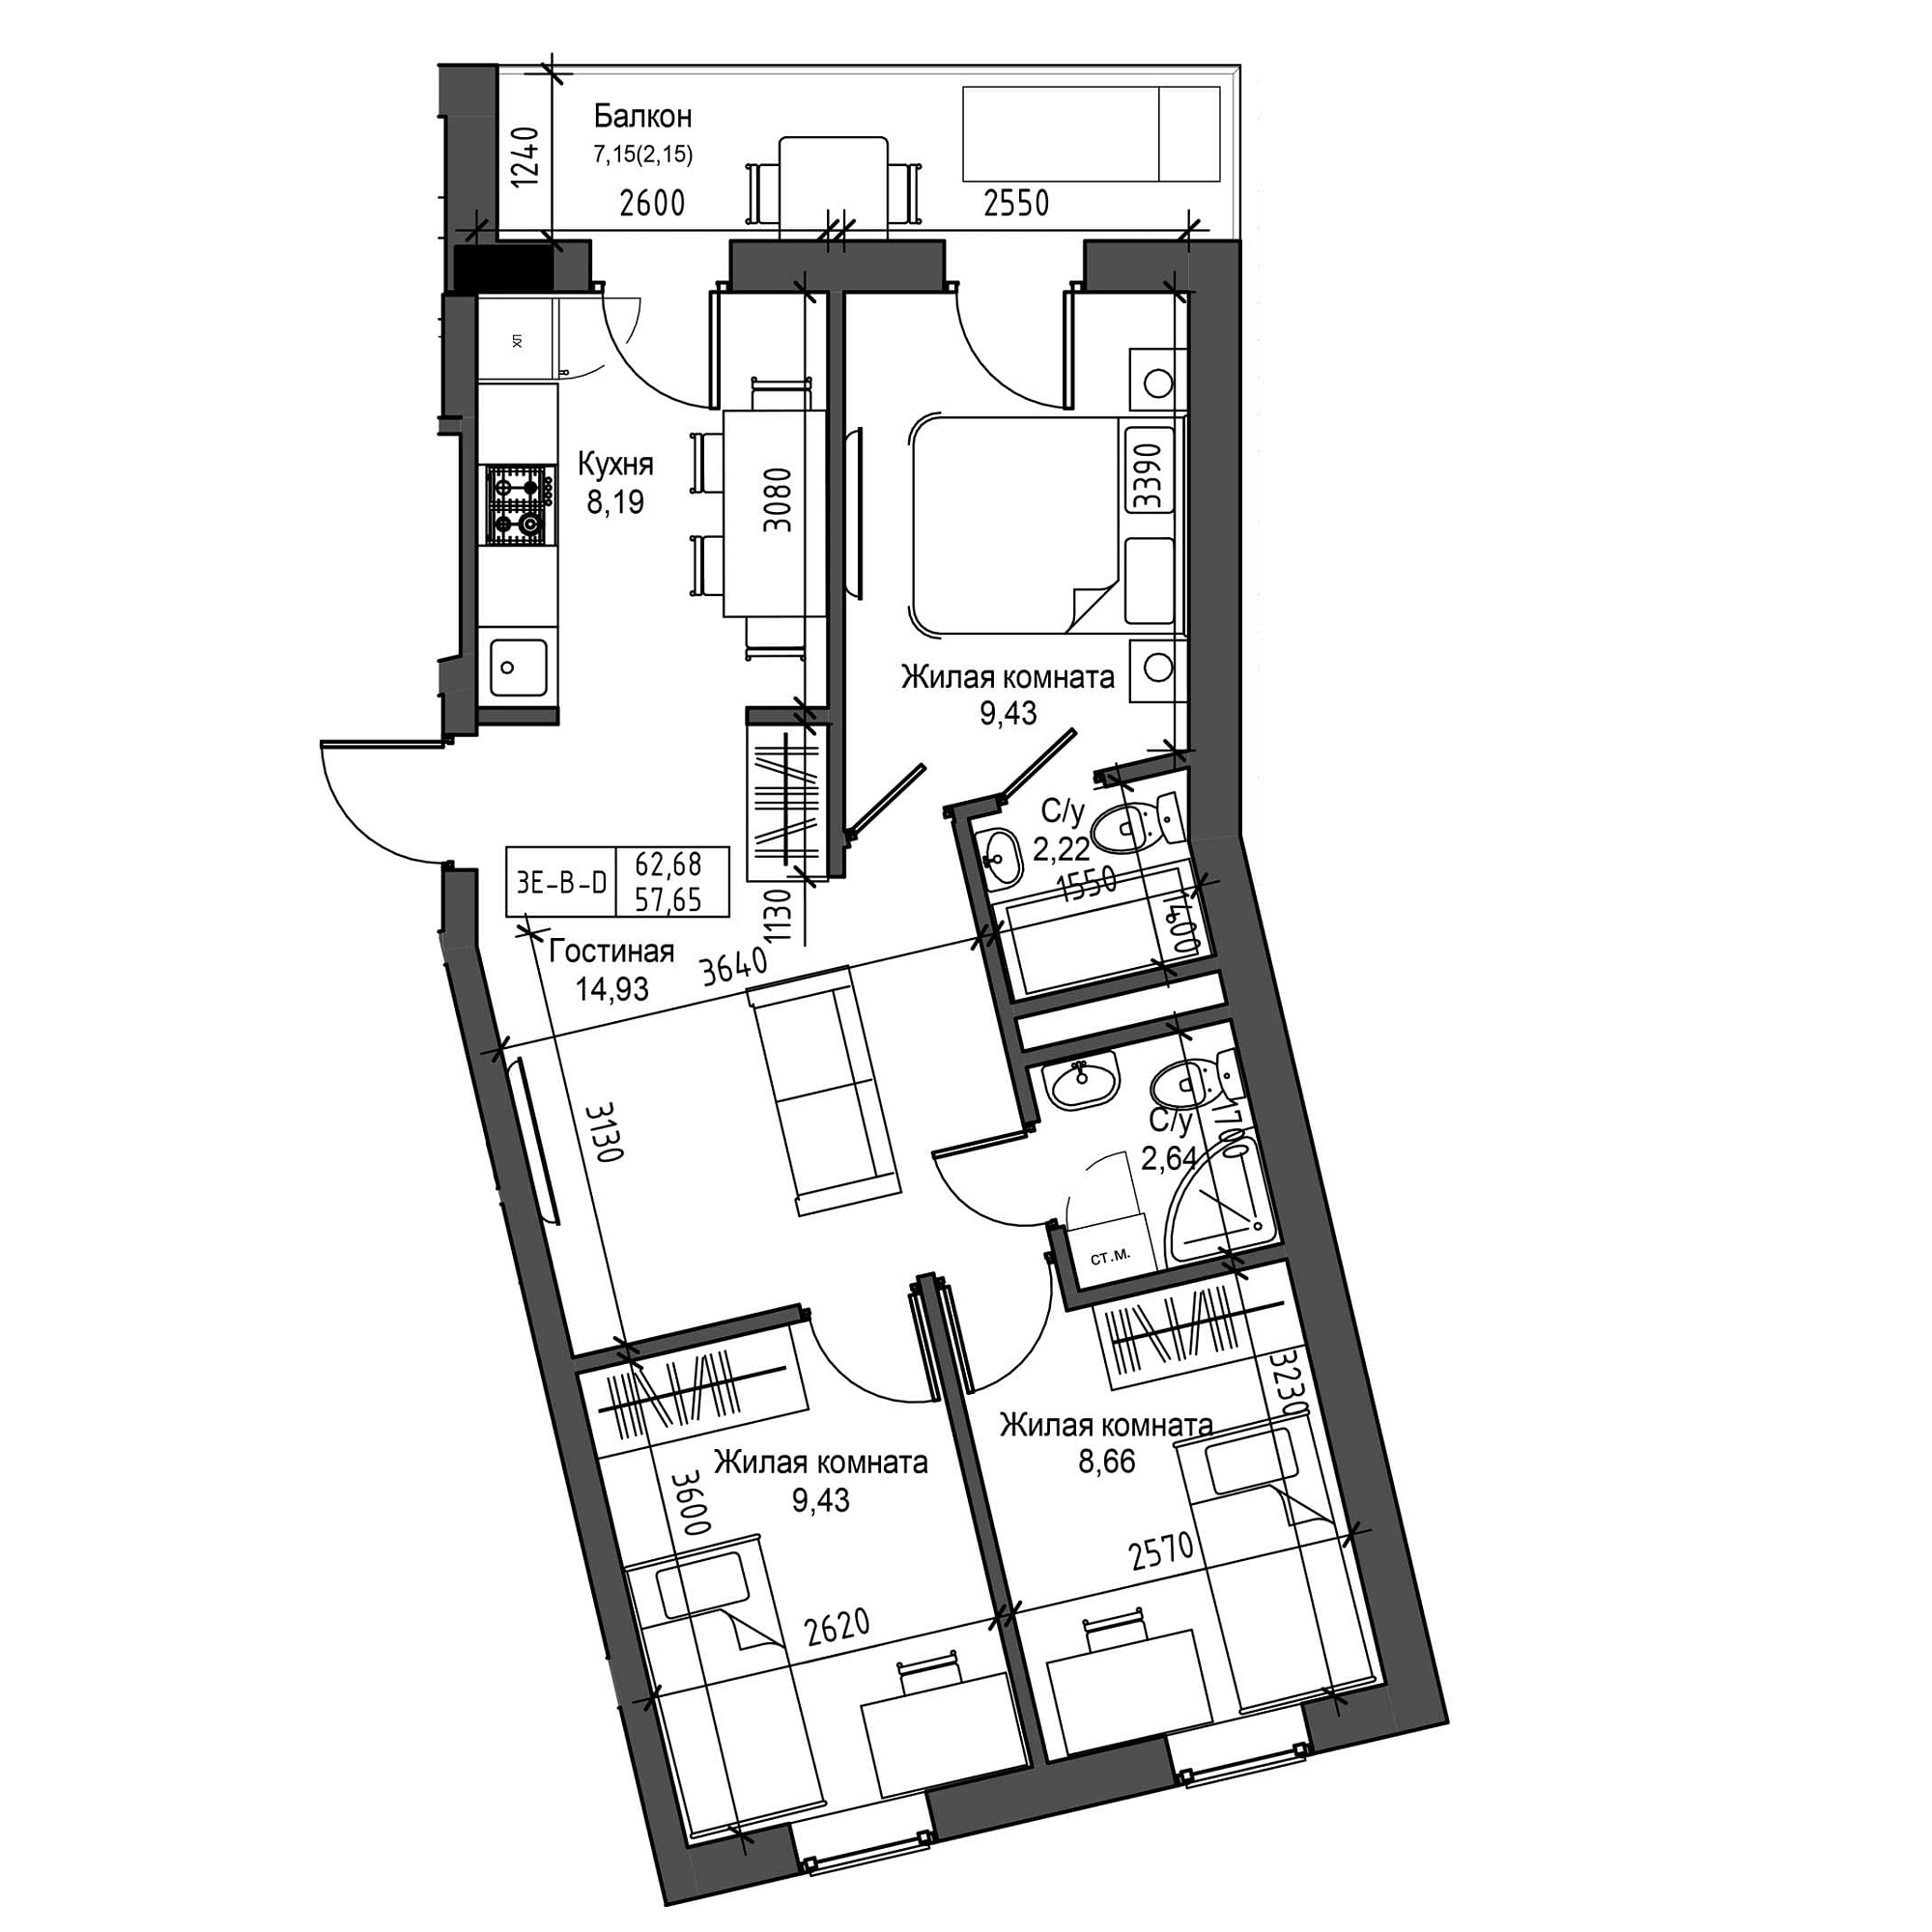 Планировка 3-к квартира площей 57.65м2, UM-001-05/0006.